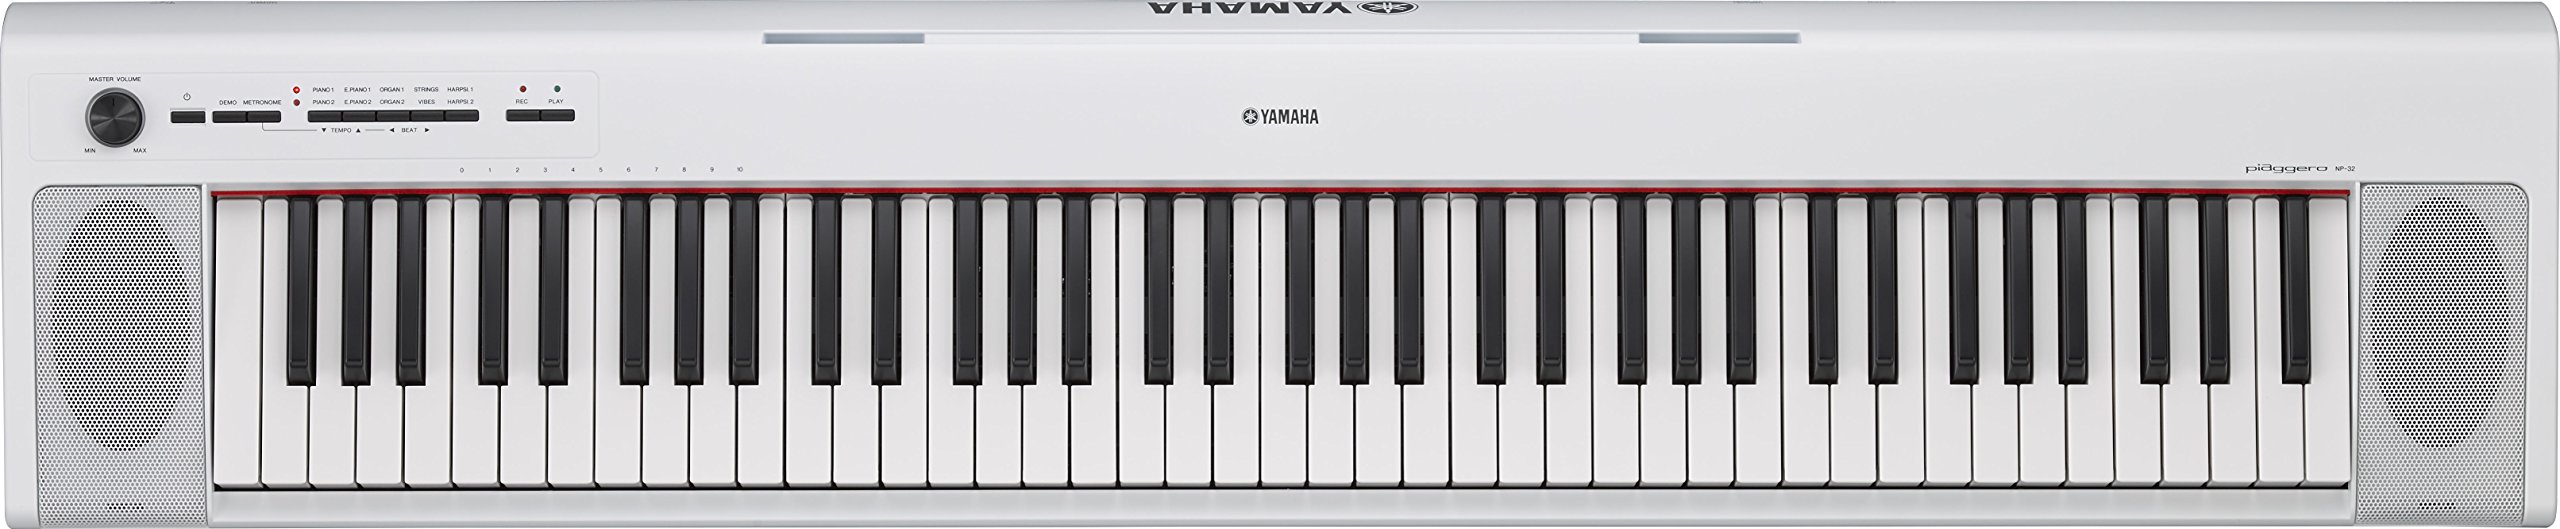 Yamaha Keyboard Piaggero NP-32WH, weiß – Leichtes Keyboard im Piano Design mit 76 Graded Soft Touch Tasten – Mit Aufnahmefunktion, Kopfhörer- und Sustain-Pedal Anschluss